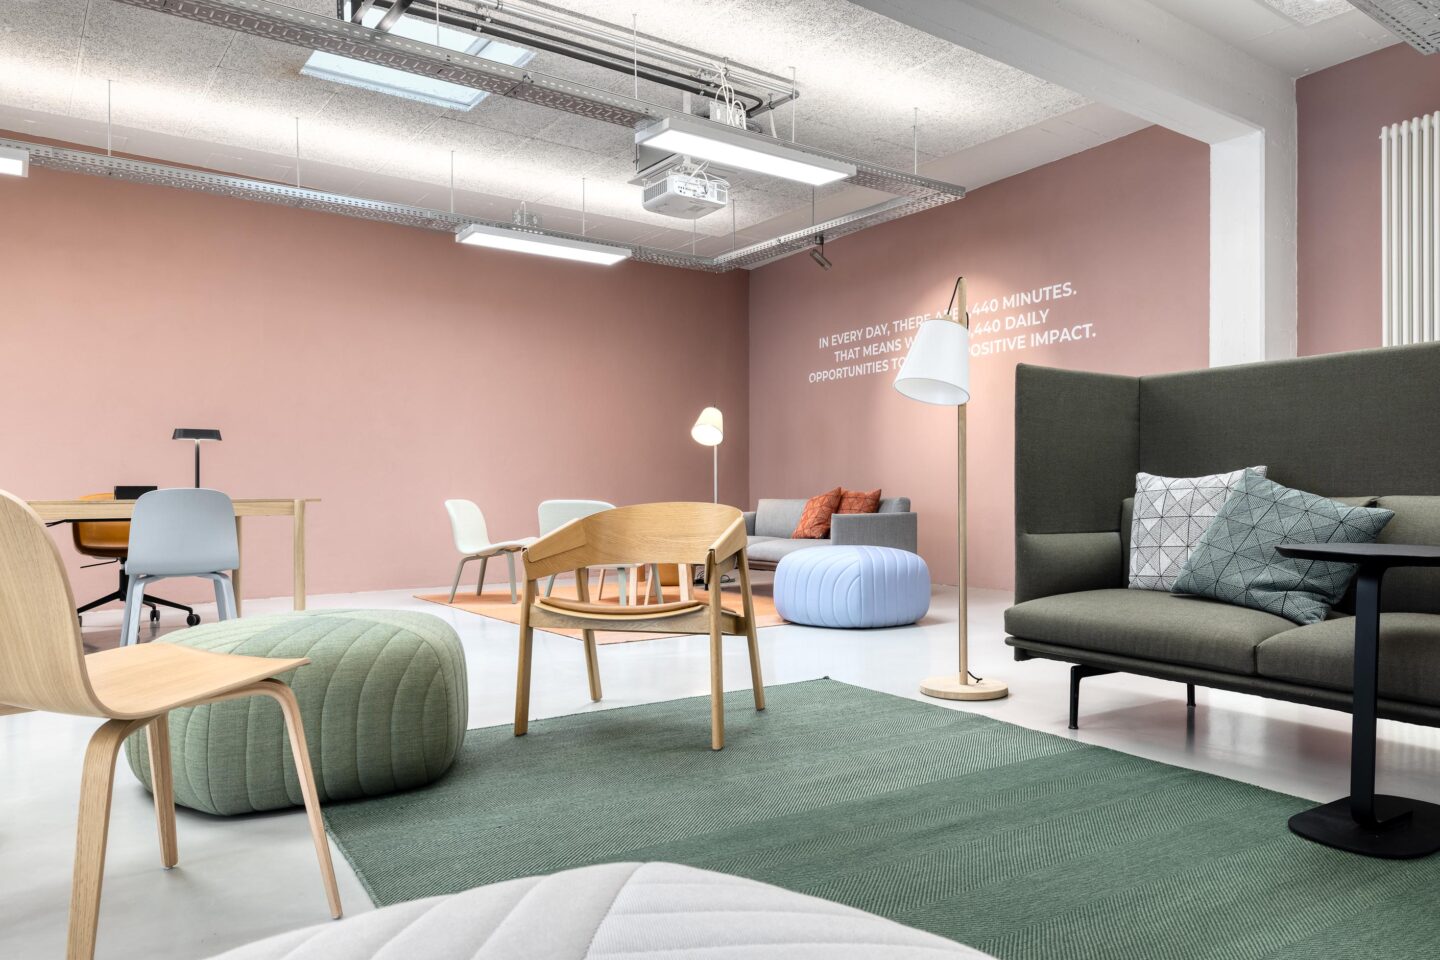 Loungebereich ausgestattet mit Muuto │ skandinavisches Design im Impact Studio